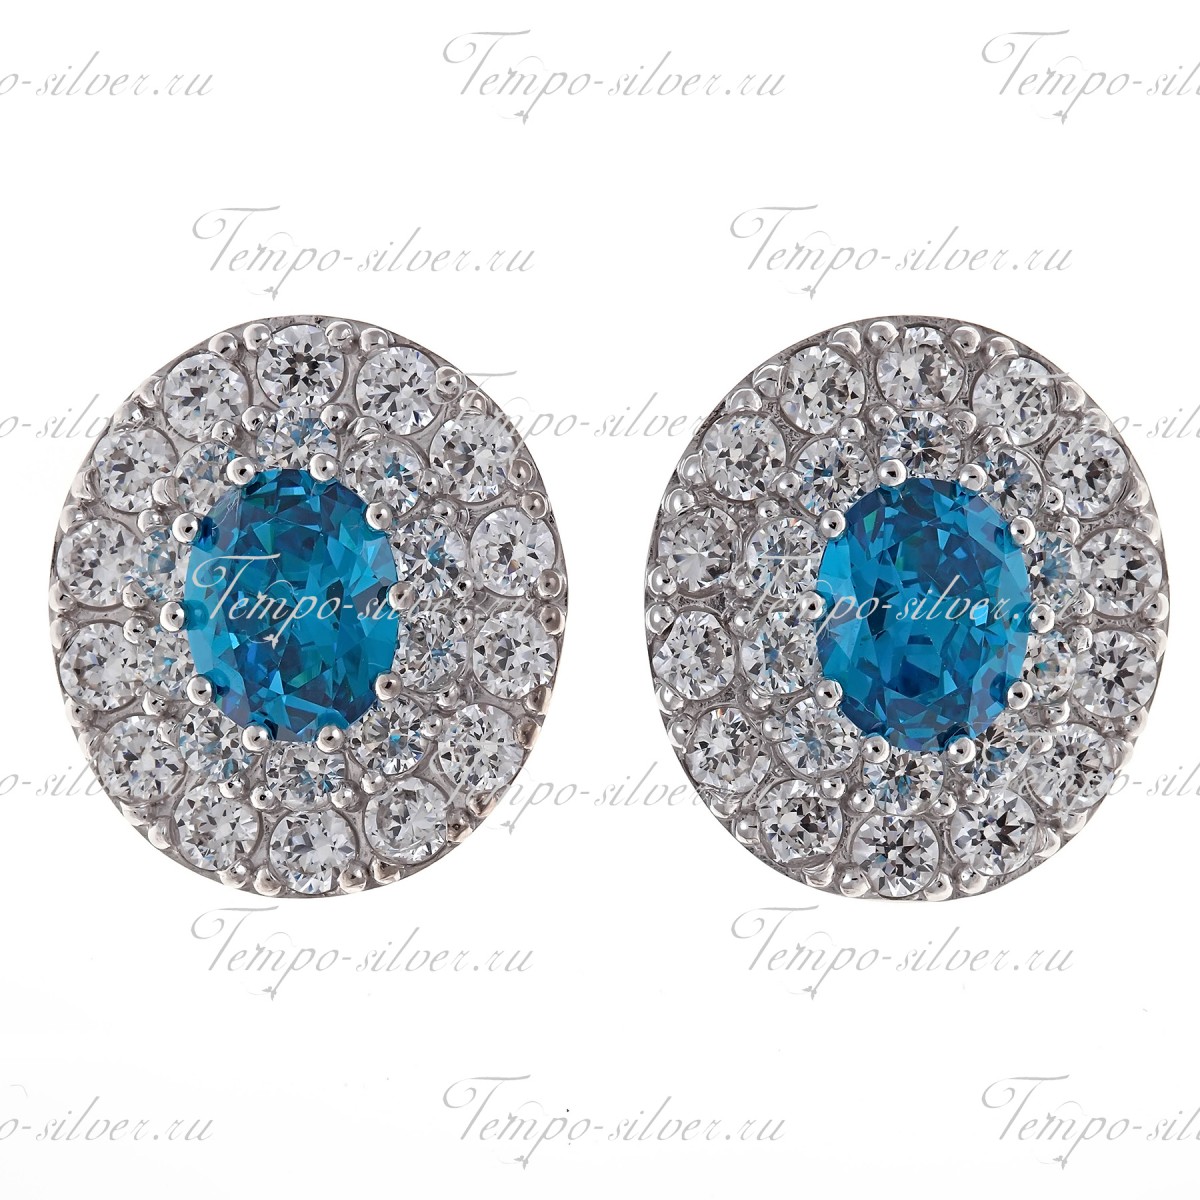 Серьги-гвоздики из серебра с овальным голубым камнем, окруженный двумя рядами белых камней